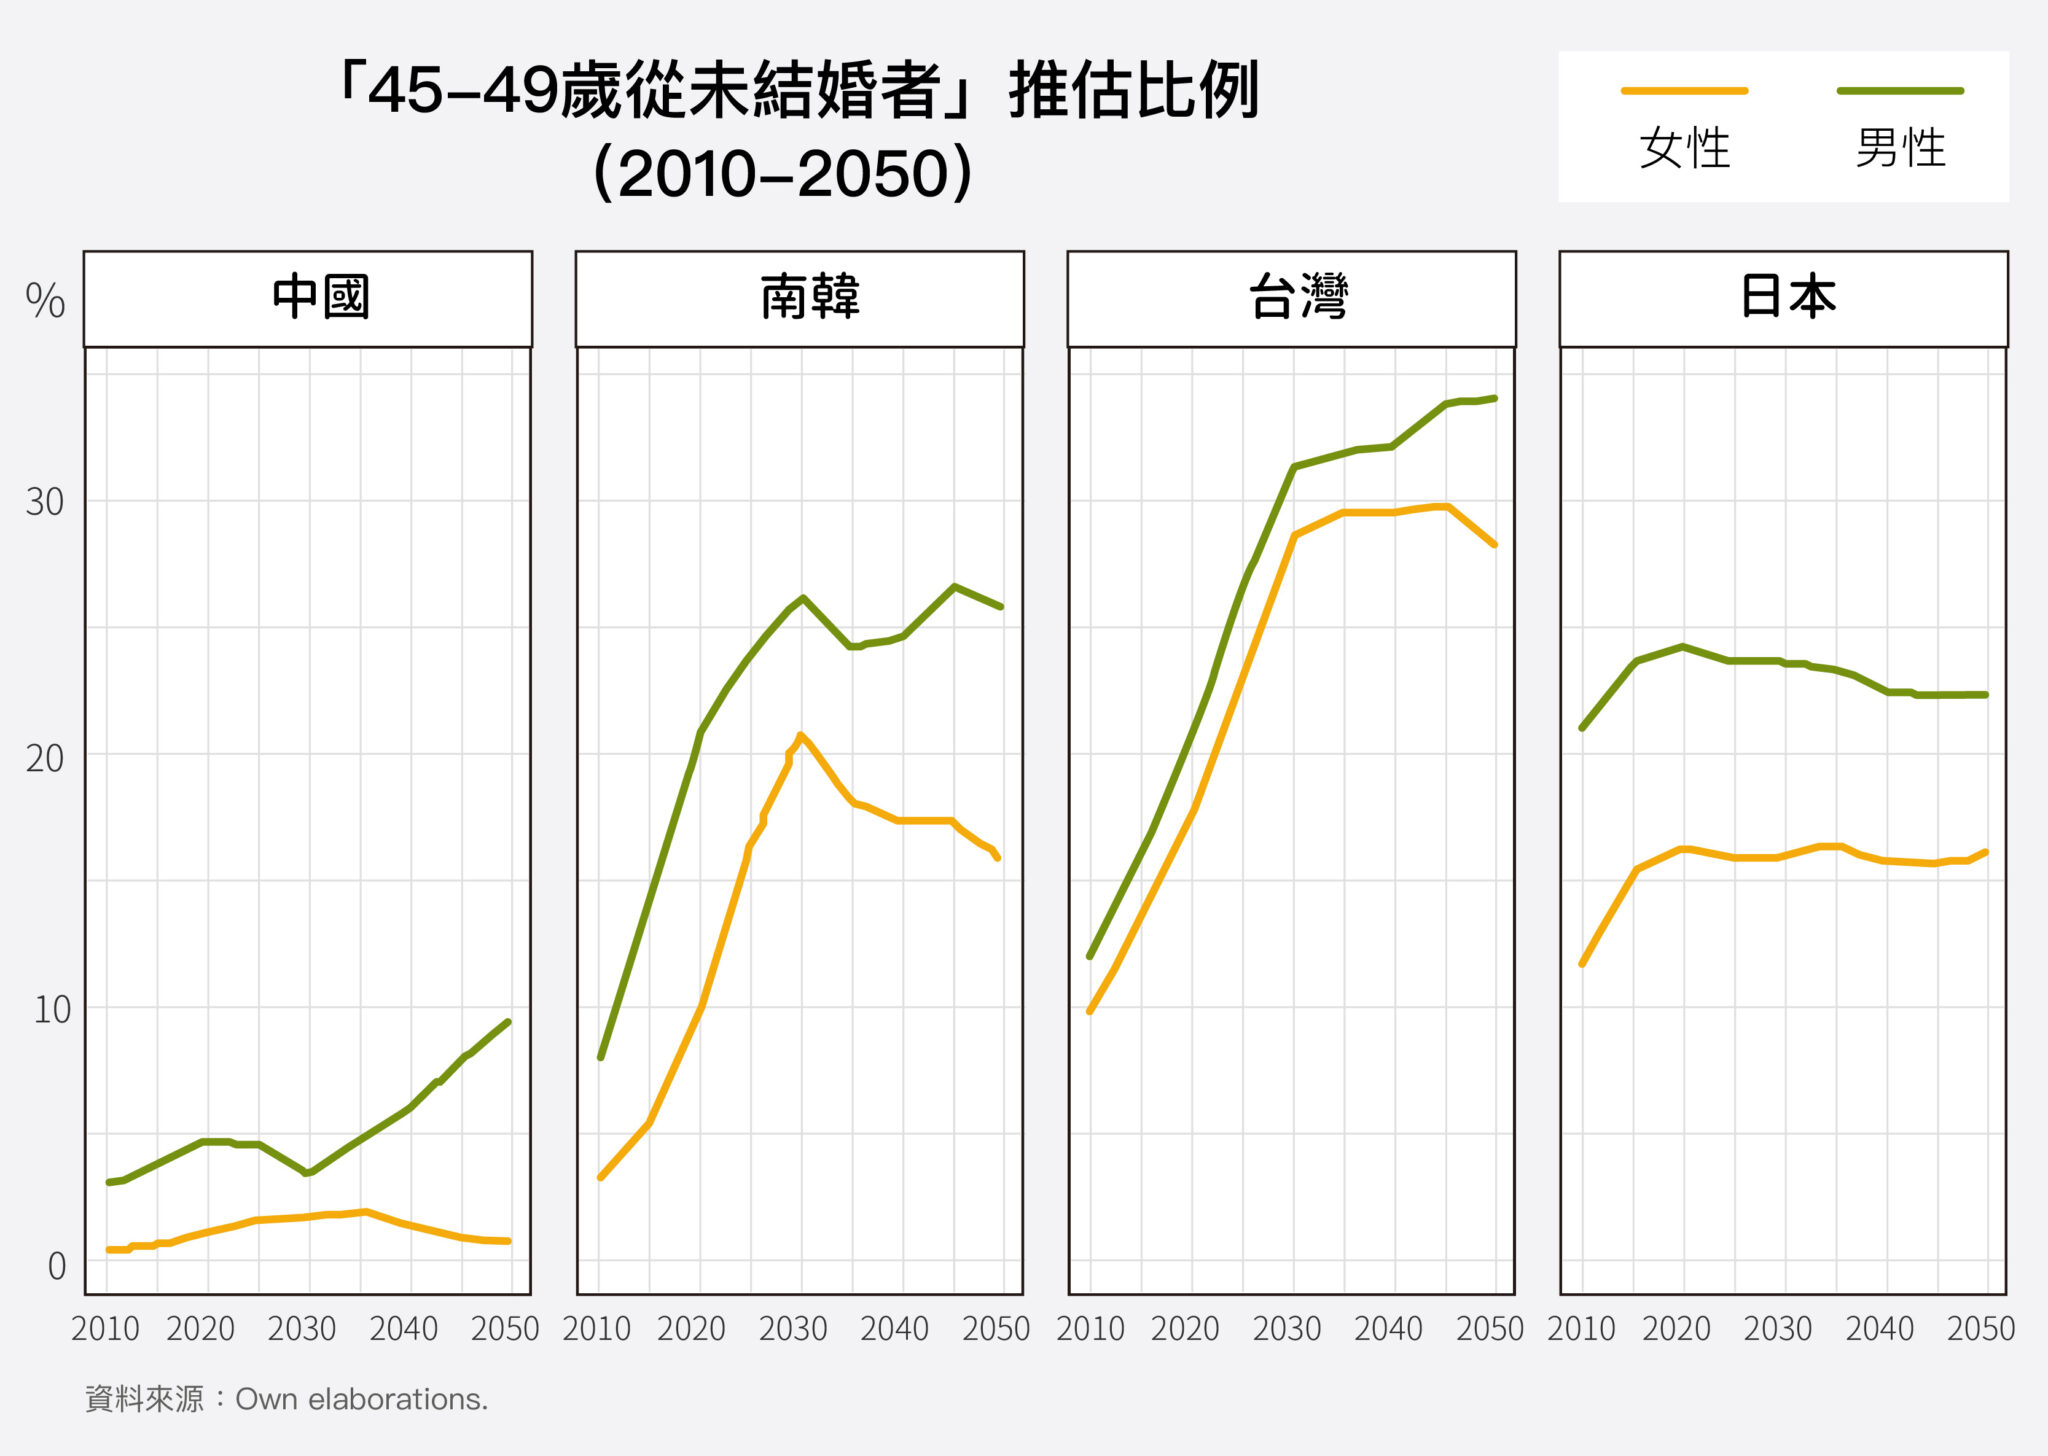 未來數十年，東亞單身人口預估會持續攀升，翻倍增加。臺灣和韓國幾乎是一路走高；日本因為工業化更早，女性婚育延遲、未婚的現象，比其他國家更早出現，因此數據預估較持平。